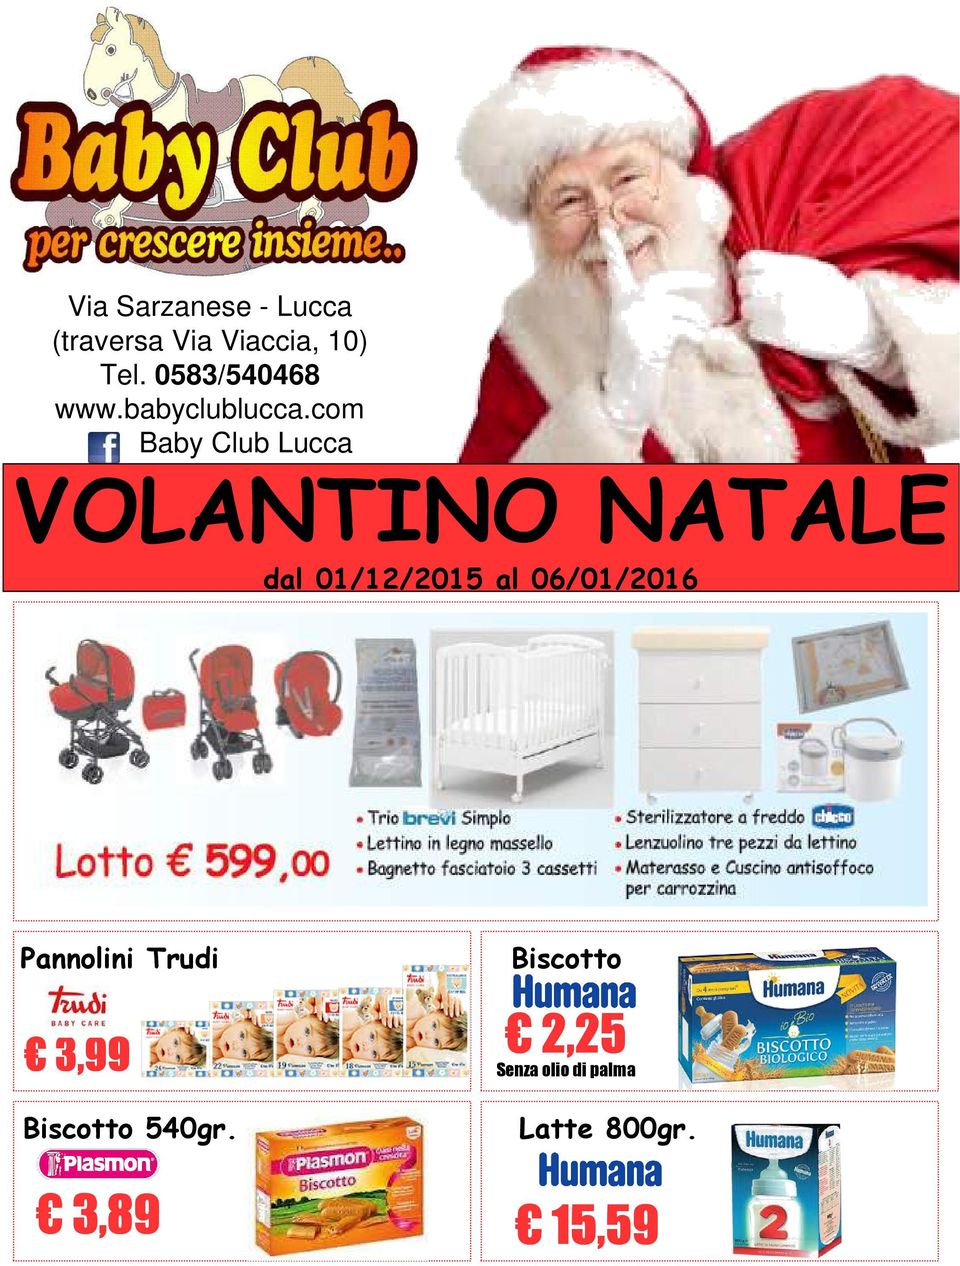 com Baby Club Lucca VOLANTINO NATALE dal 01/12/2015 al